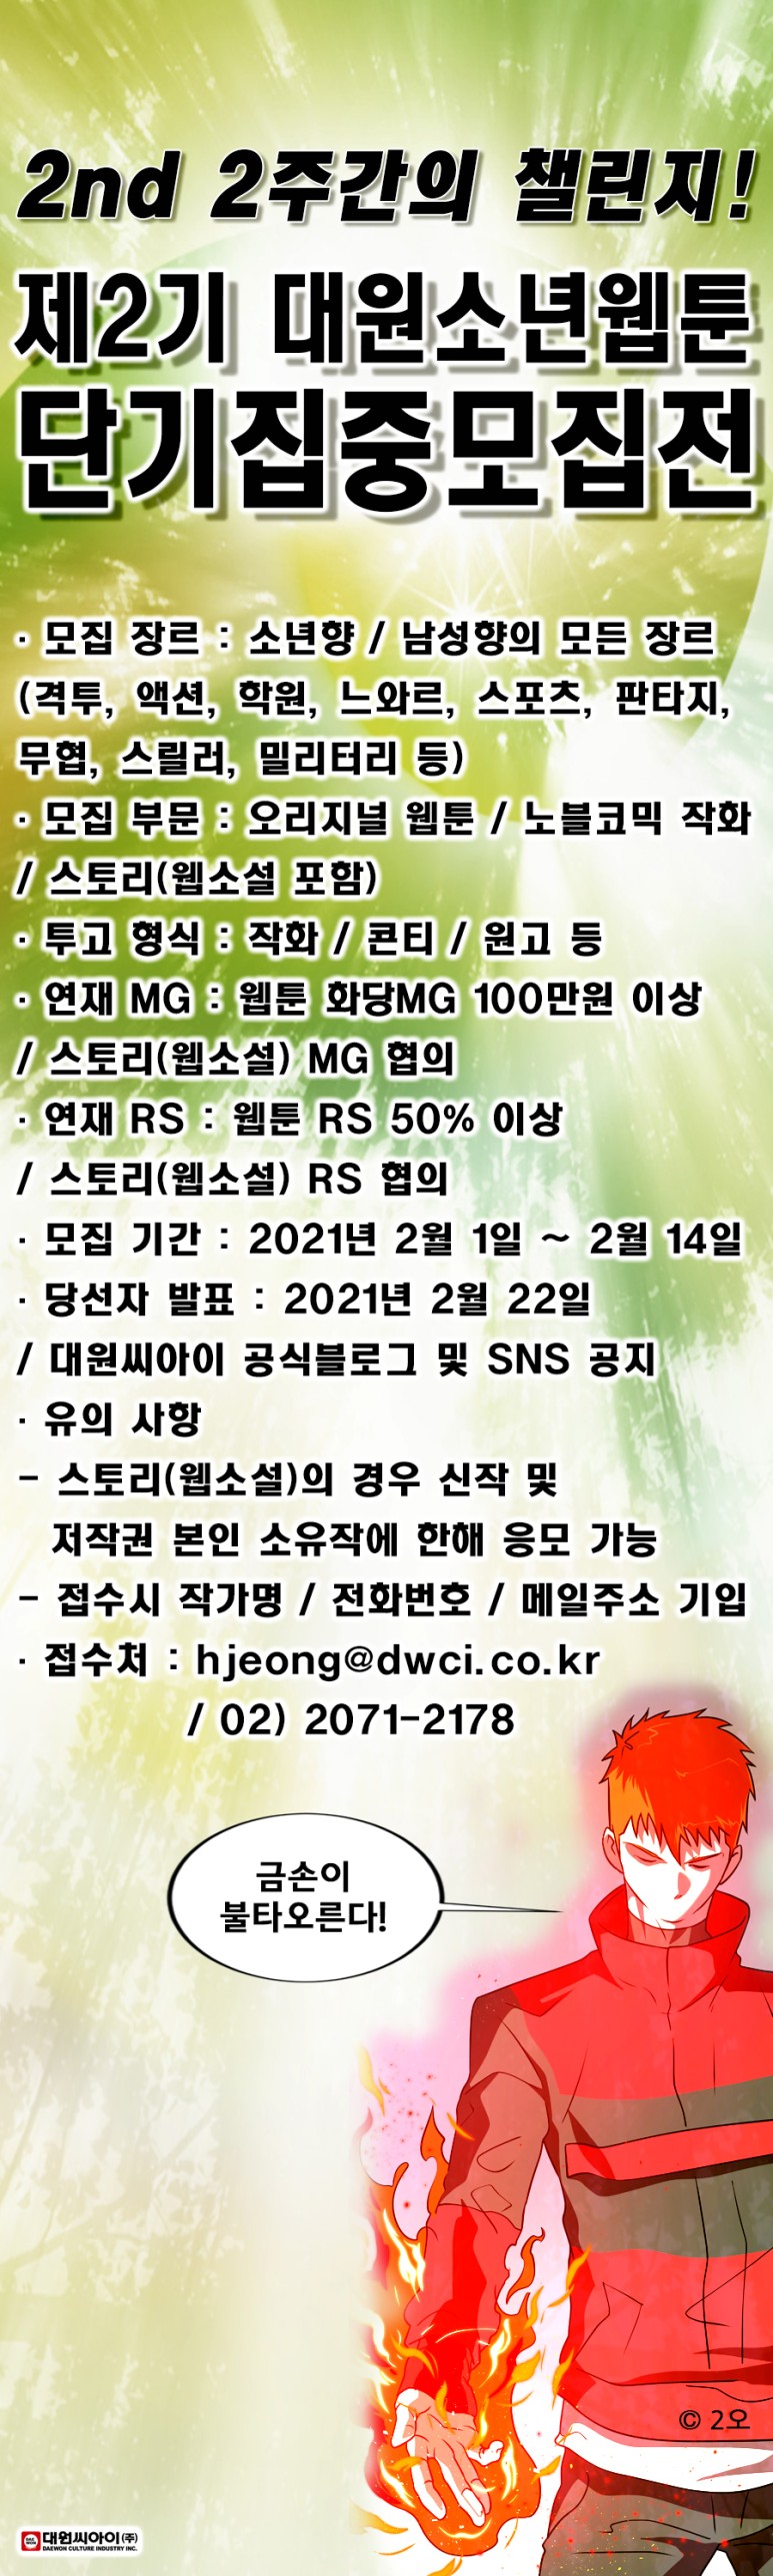 제2기 대원소년웹툰 단기집중모집전